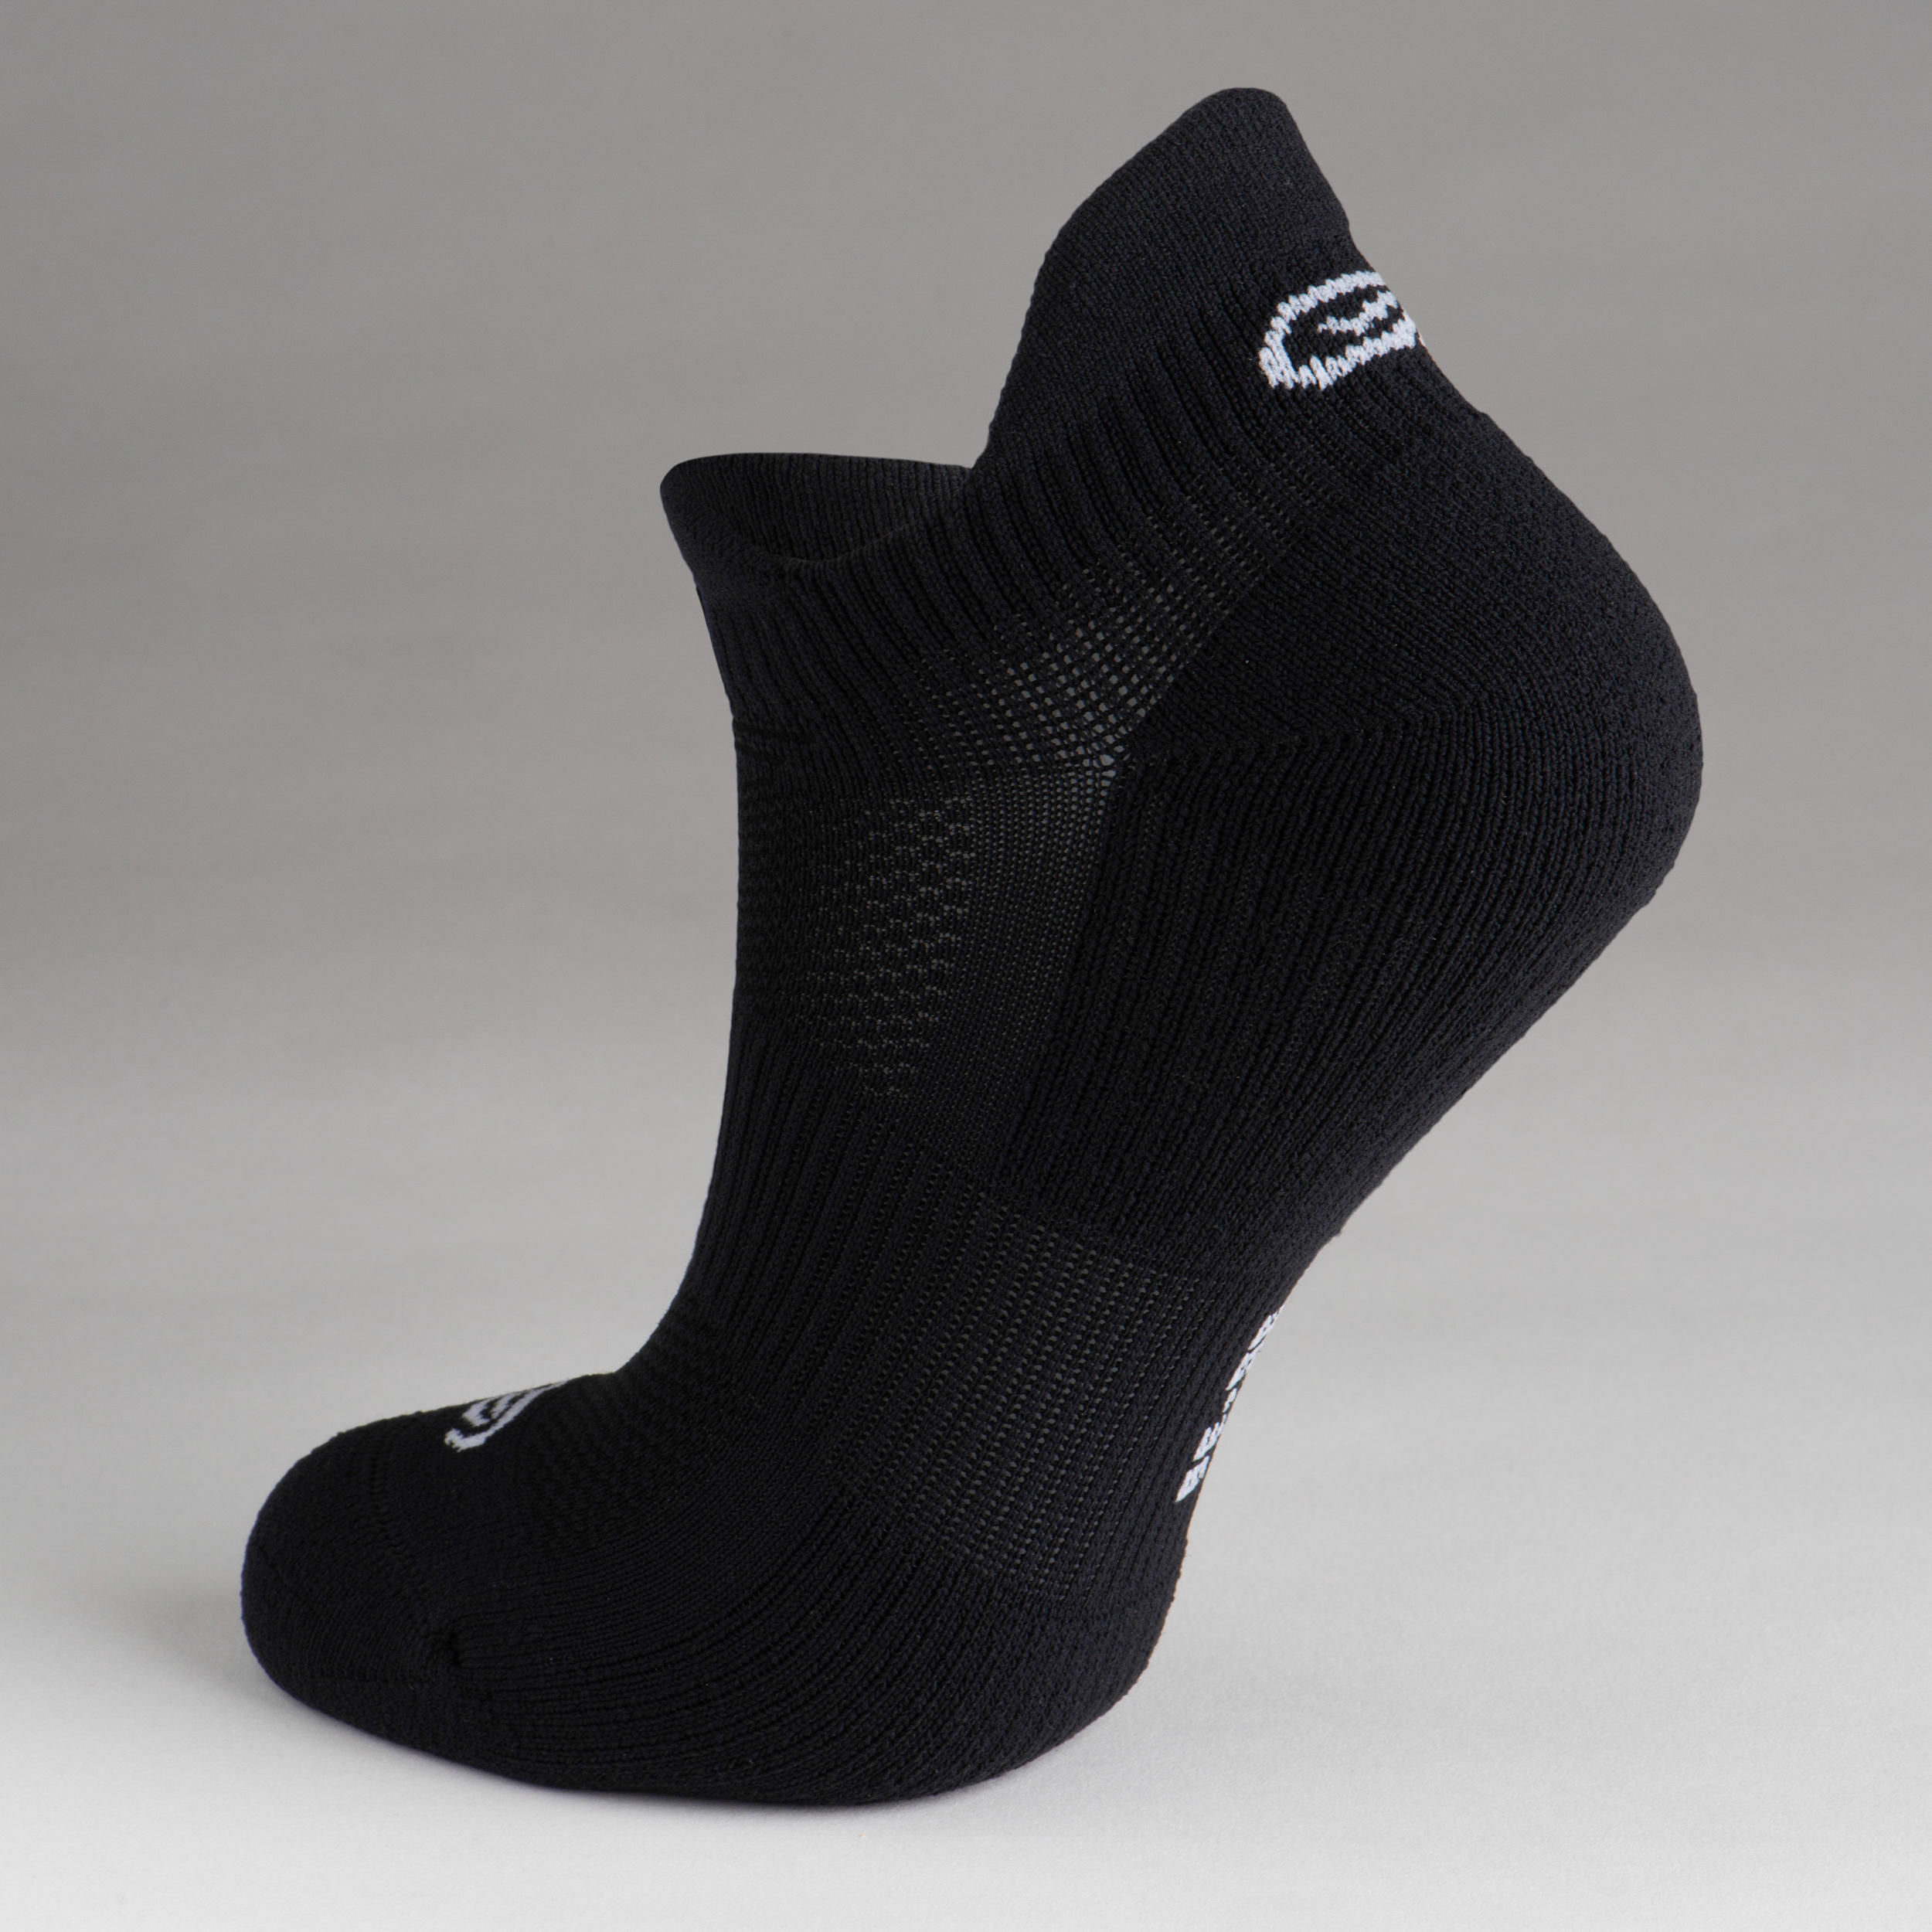 KIPRUN 500 INV kids comfort running socks 2-pack - black and white 8/9